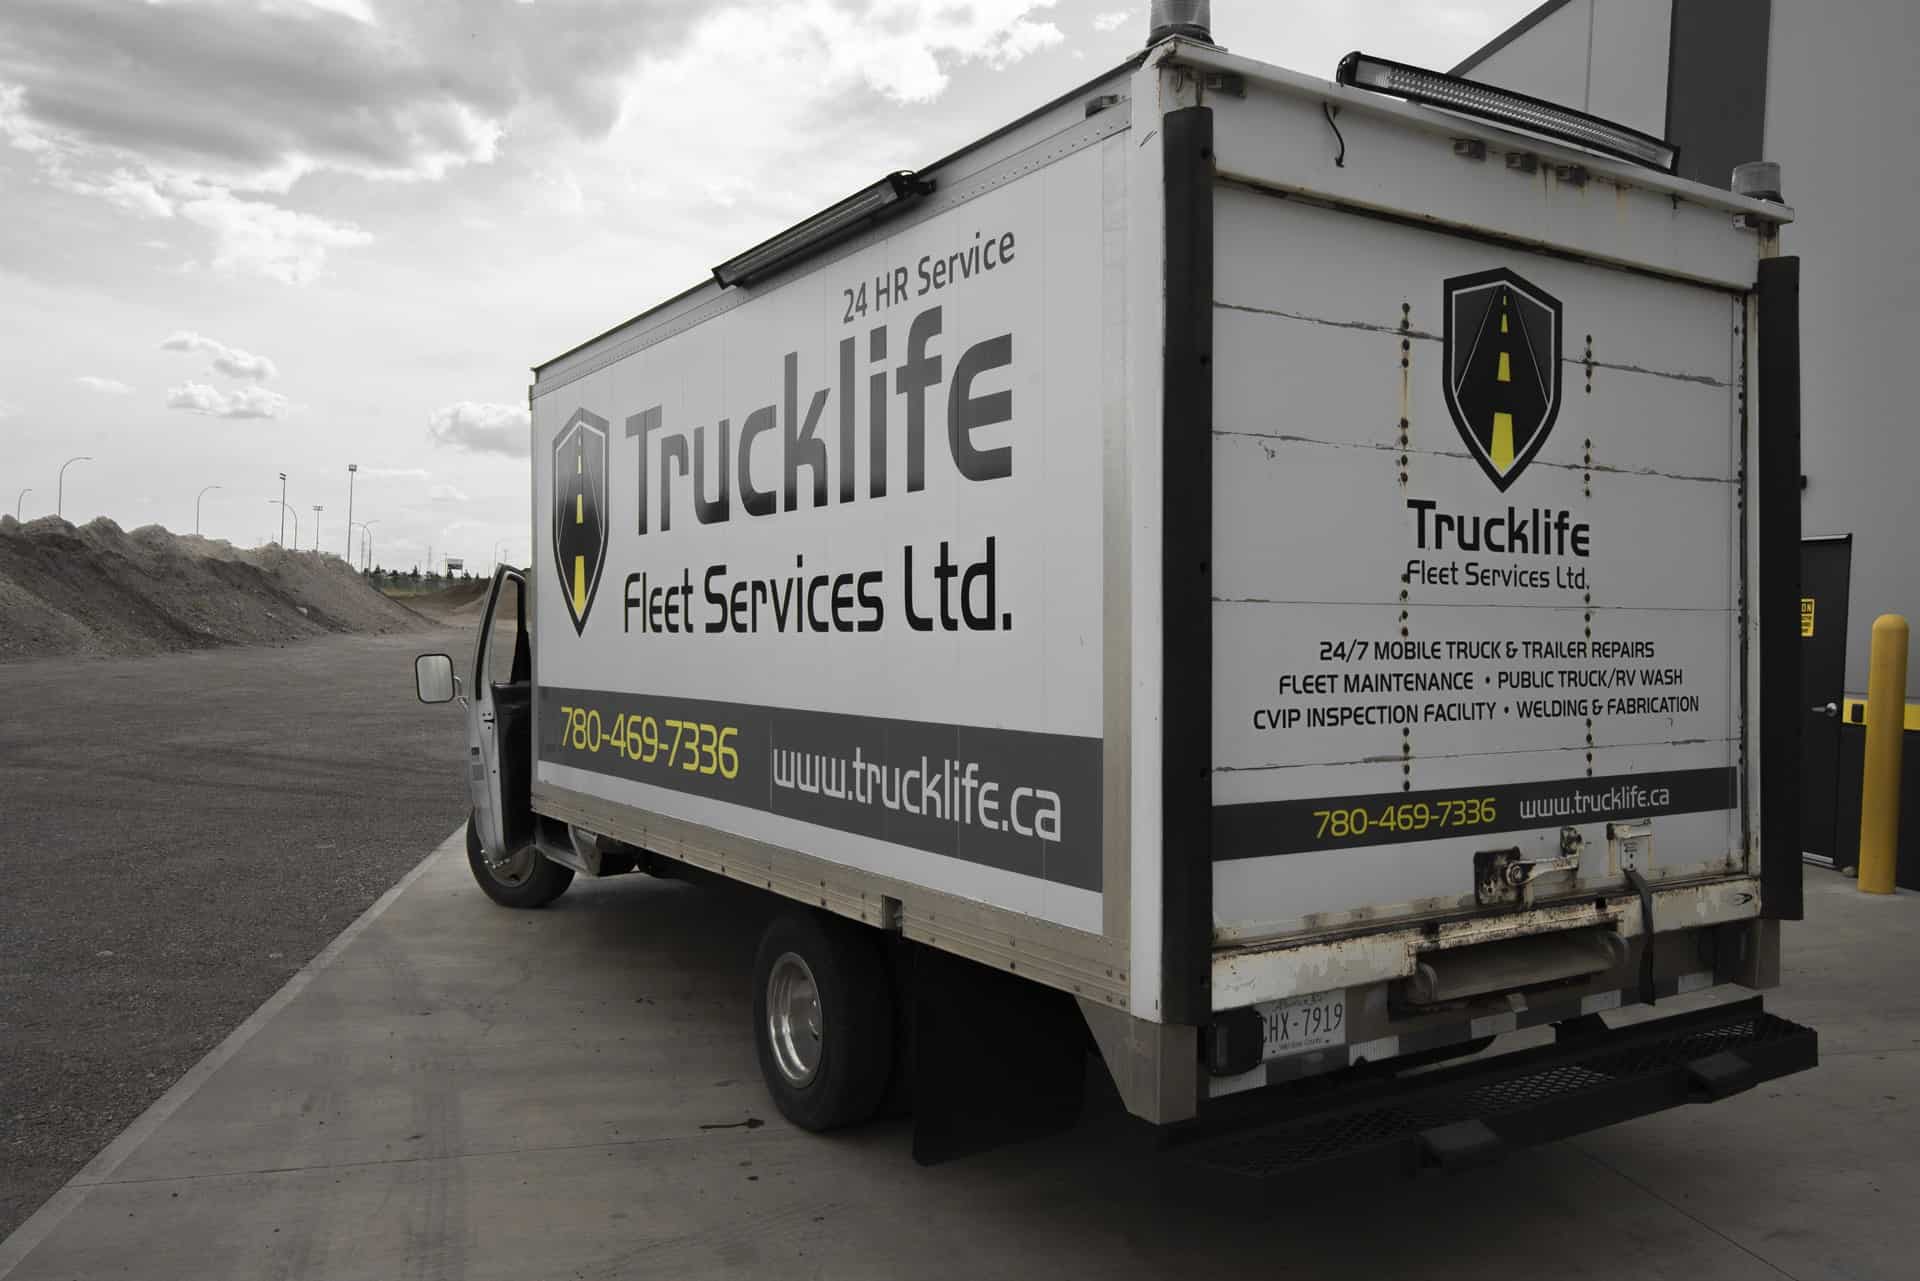 Trucklife Mobile Truck & Trailer Repair Services - Edmonton, AB